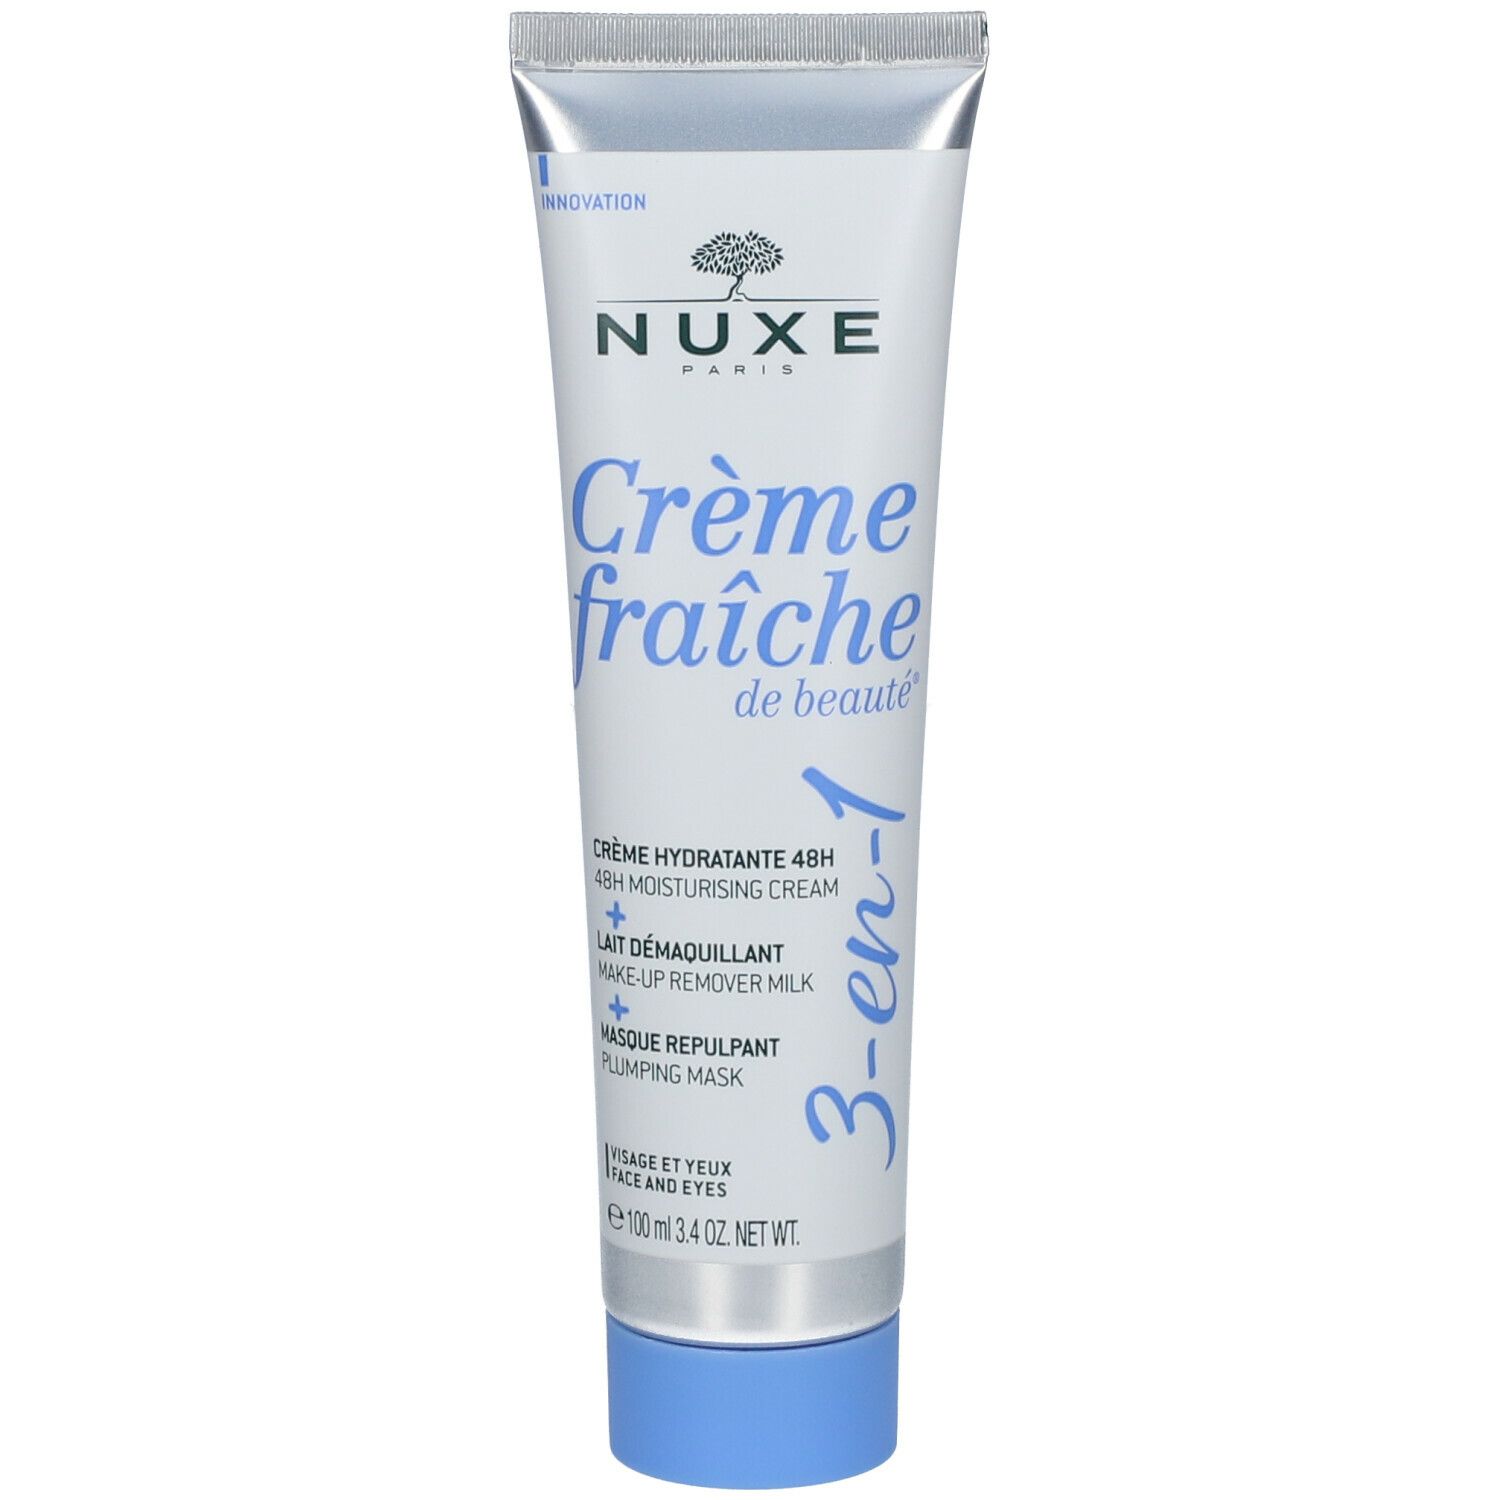 Nuxe Crème fraîche de beauté® 3-en-1, Crème Hydratante 48h, Lait Démaquillant, Masque Repulpant